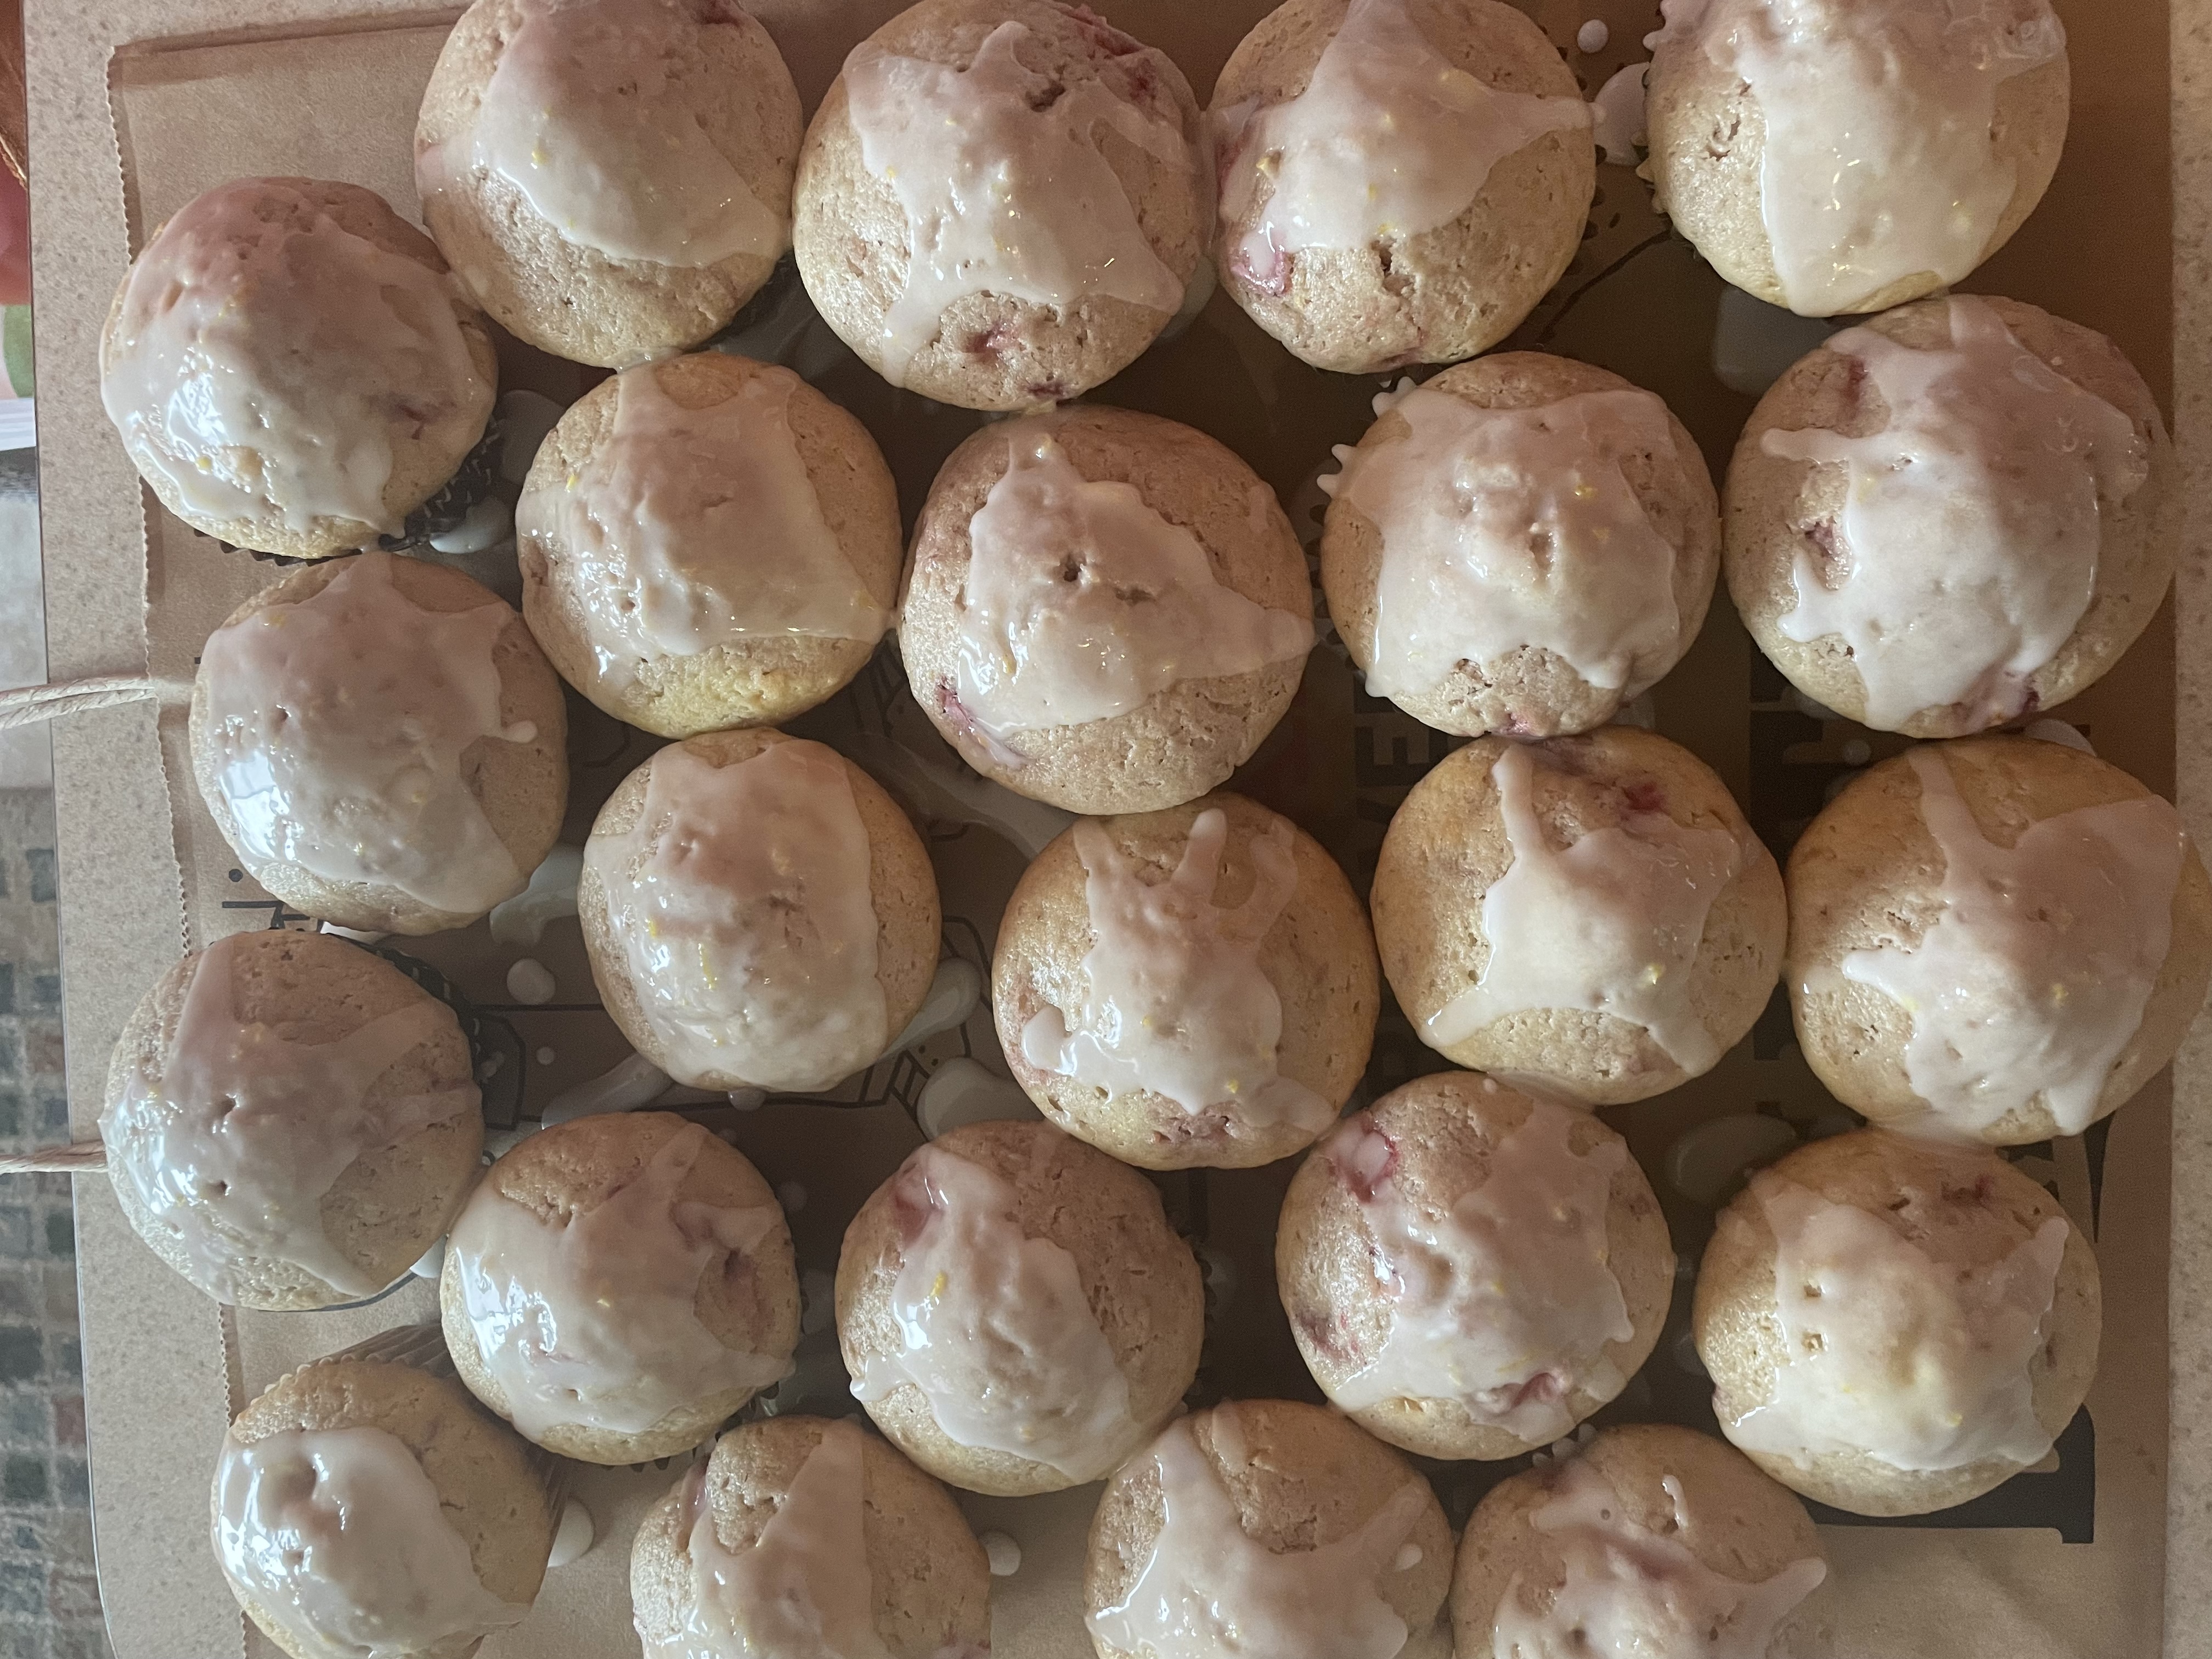 World's Best Lemon Blueberry Muffins